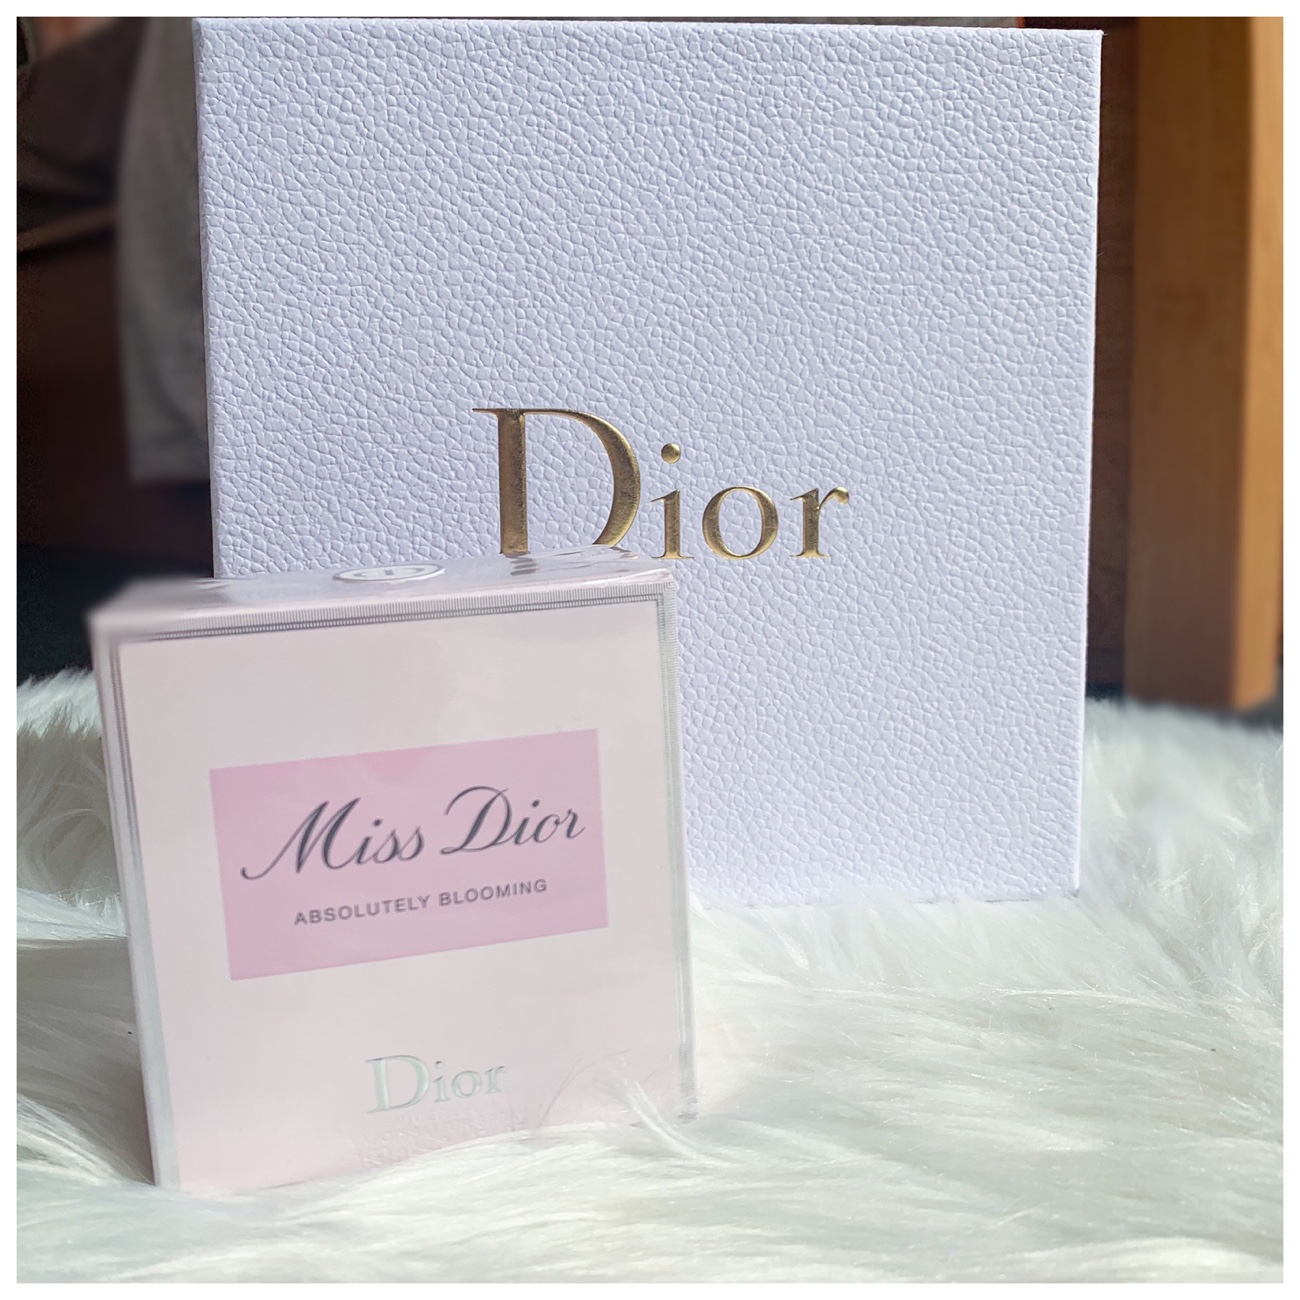 Dior, Makeup, Dior Floral Box 85 X 85